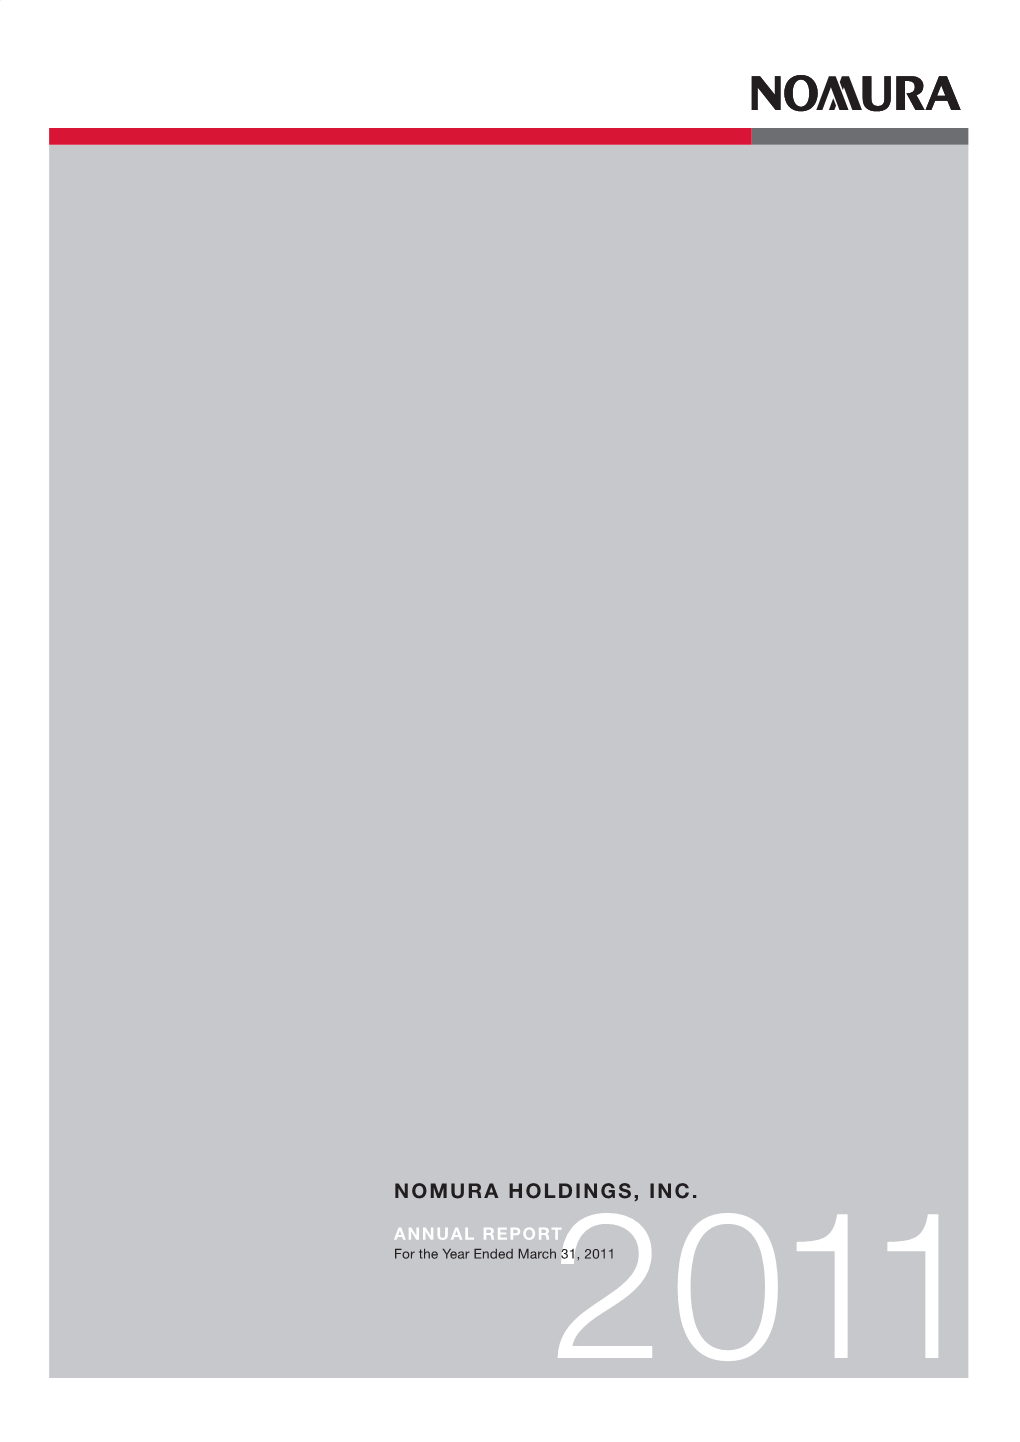 Nomura Holdings,Inc. Annual Report 2011